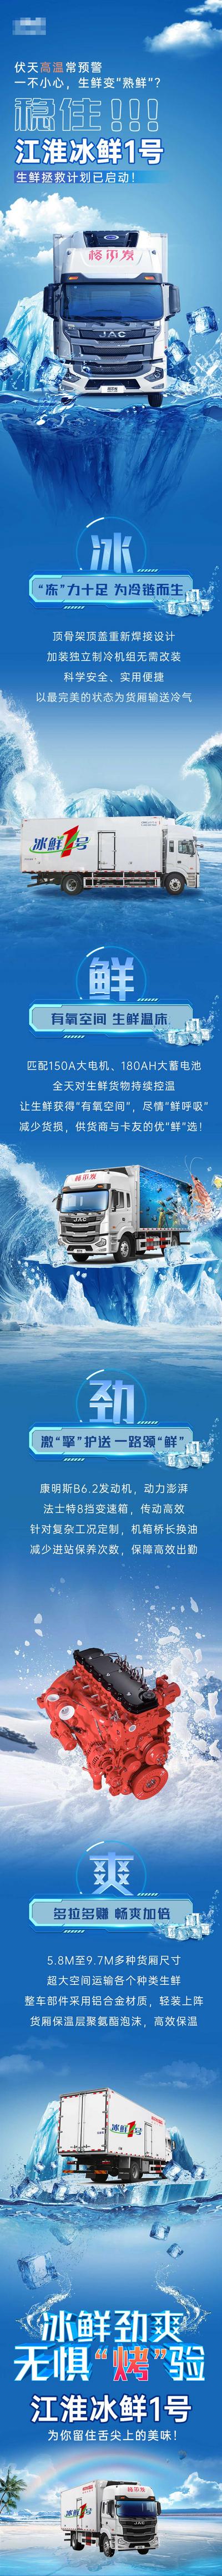 南门网 广告 夏日 清凉 汽车 长图 创意 专题设计 送清凉 大气 冰块 冰山 冷链